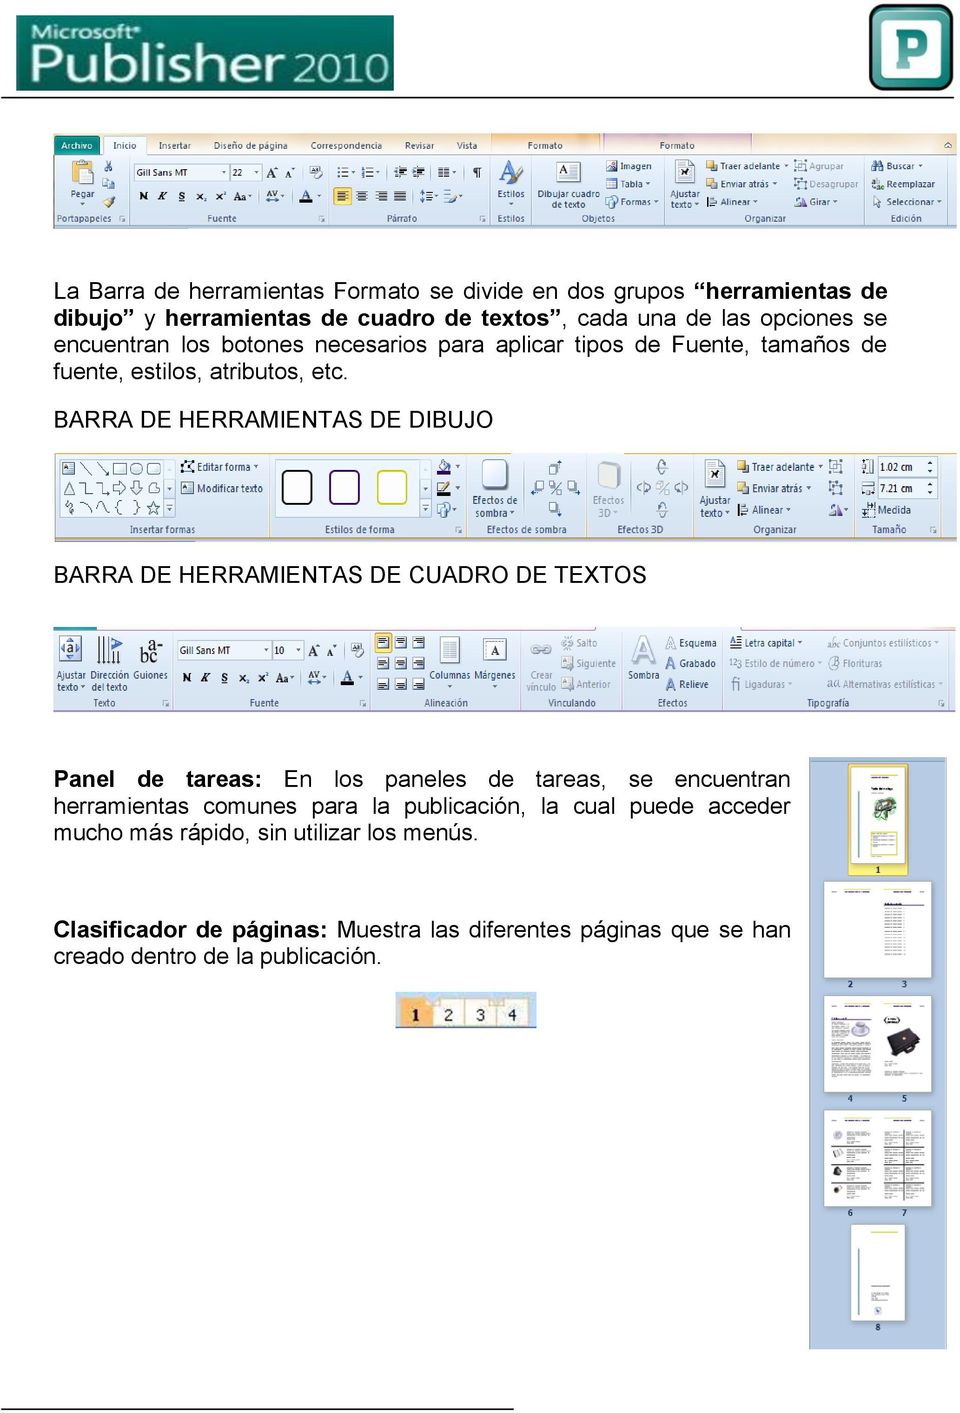 BARRA DE HERRAMIENTAS DE DIBUJO BARRA DE HERRAMIENTAS DE CUADRO DE TEXTOS Panel de tareas: En los paneles de tareas, se encuentran herramientas